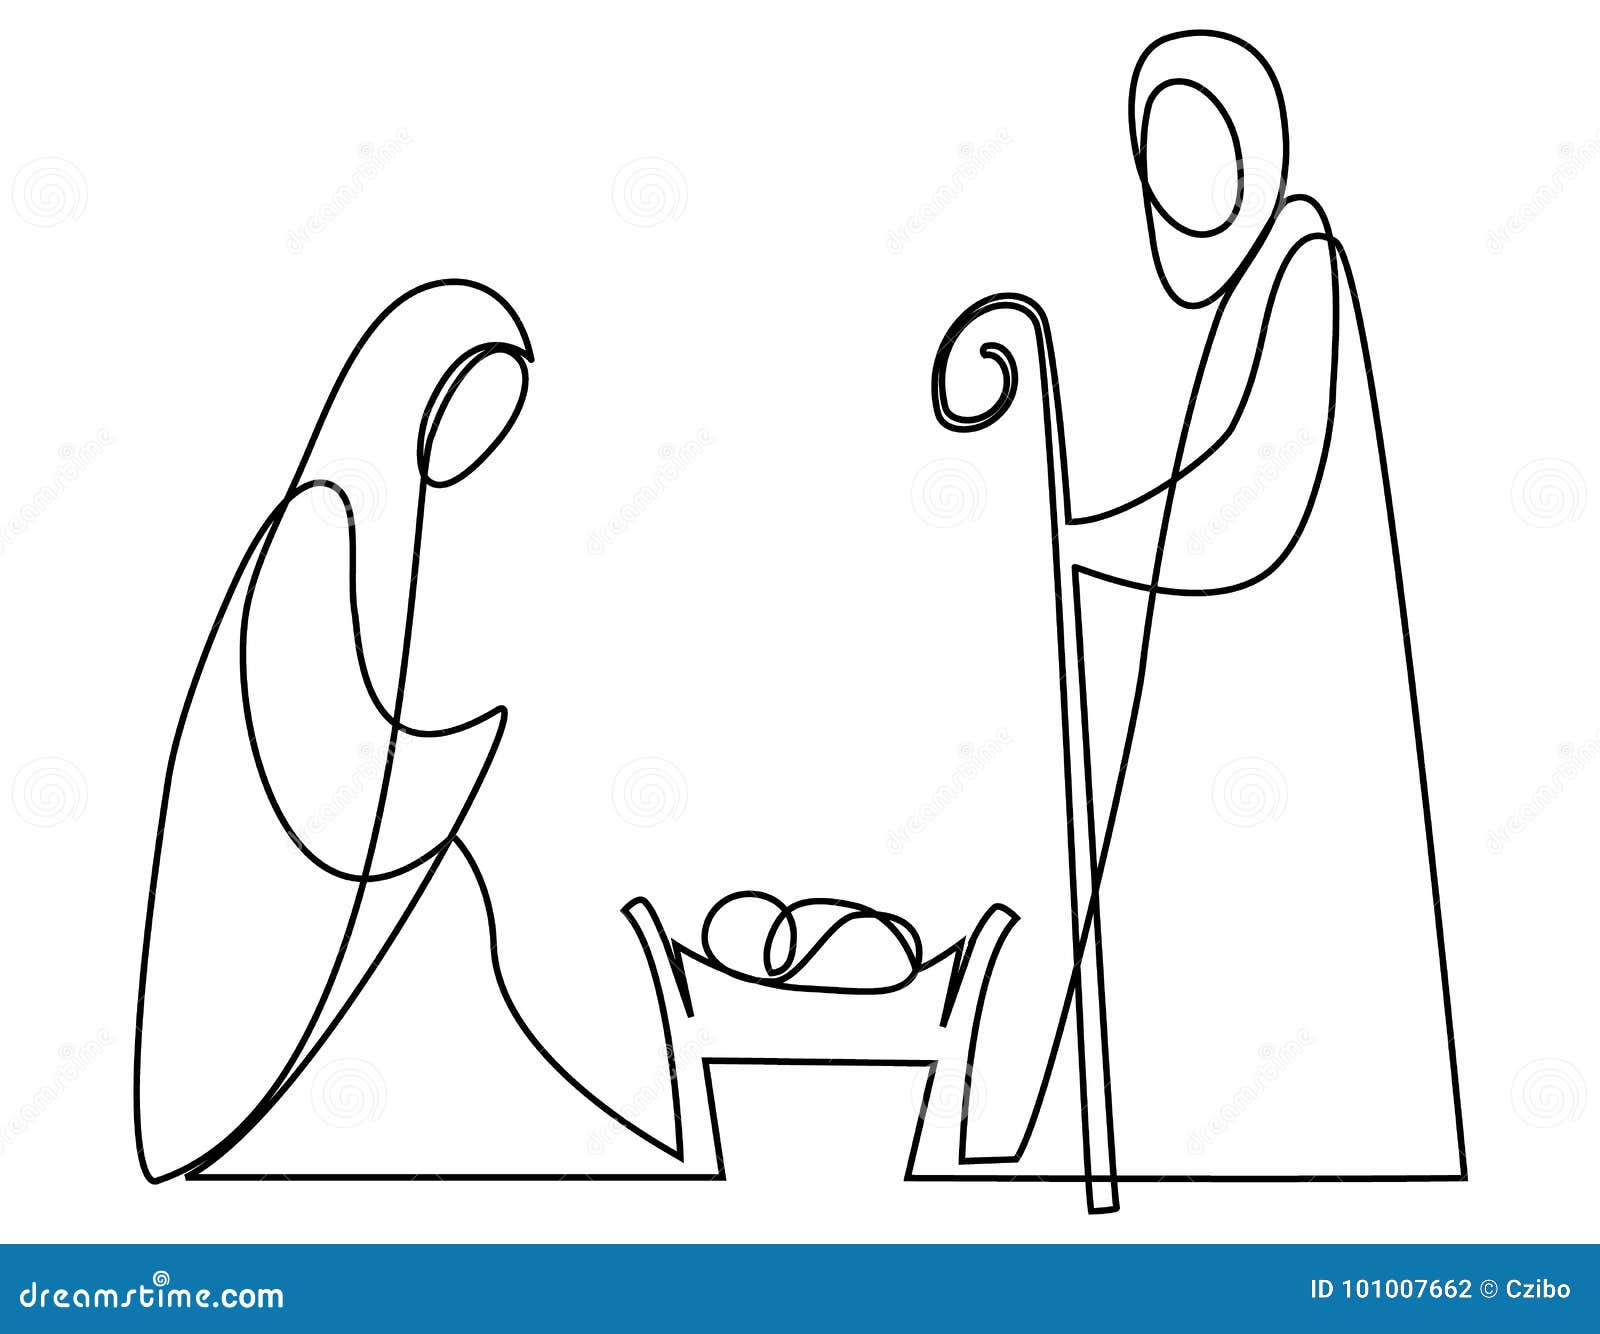 nativity scene with holy family